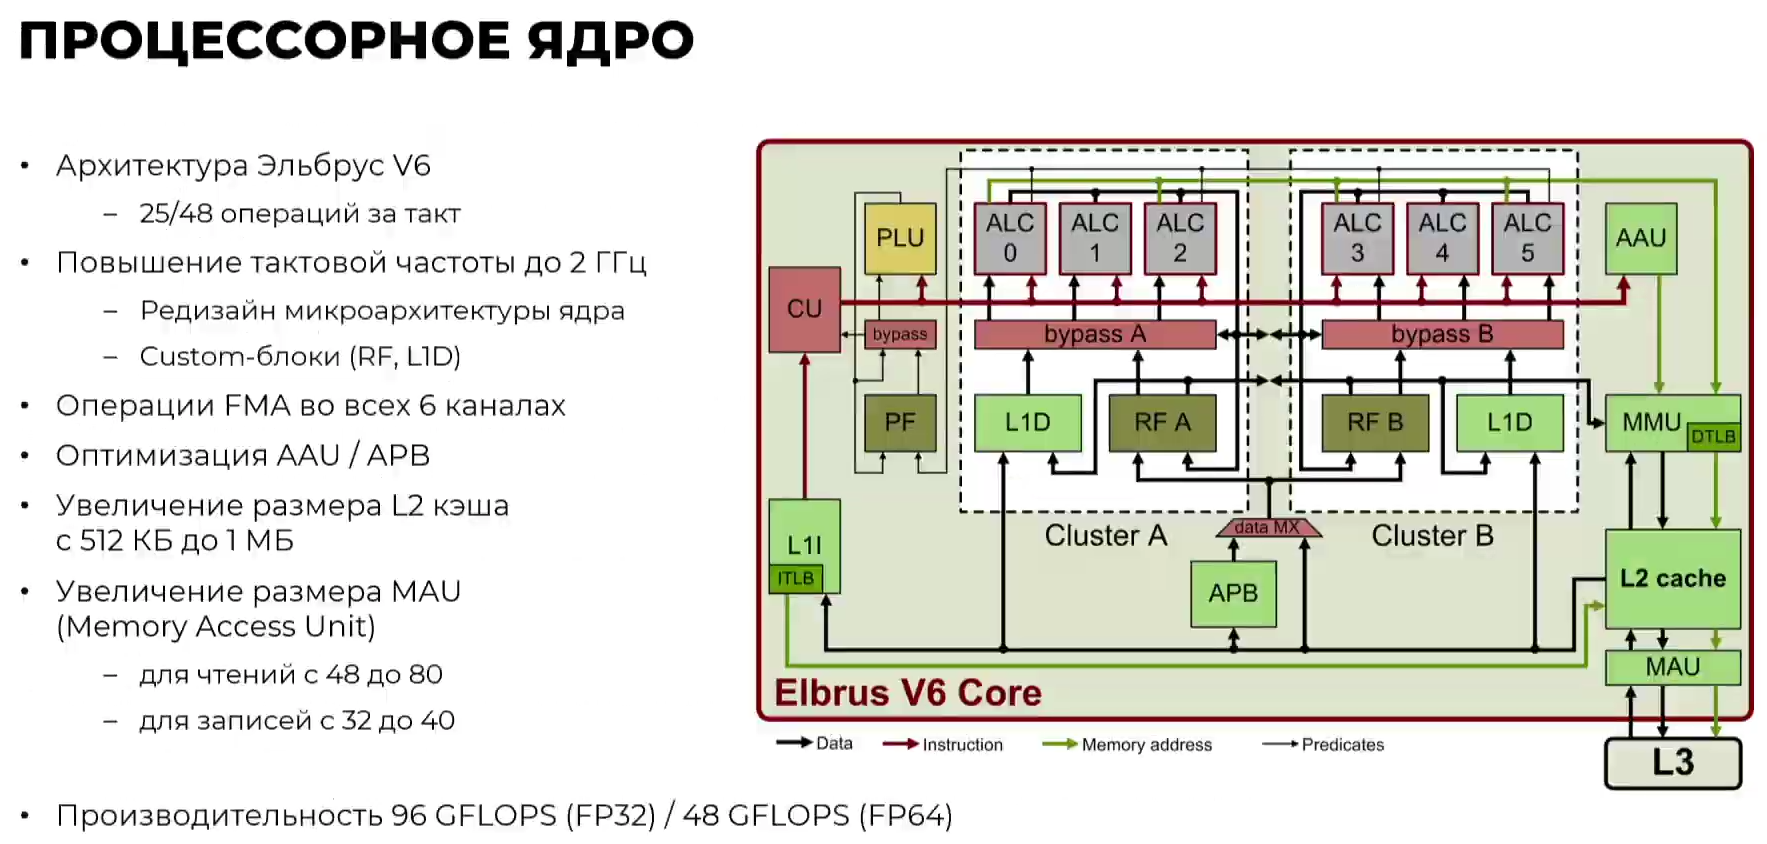 Микропроцессор эльбрус — потенциальные возможности для развития и применения / хабр